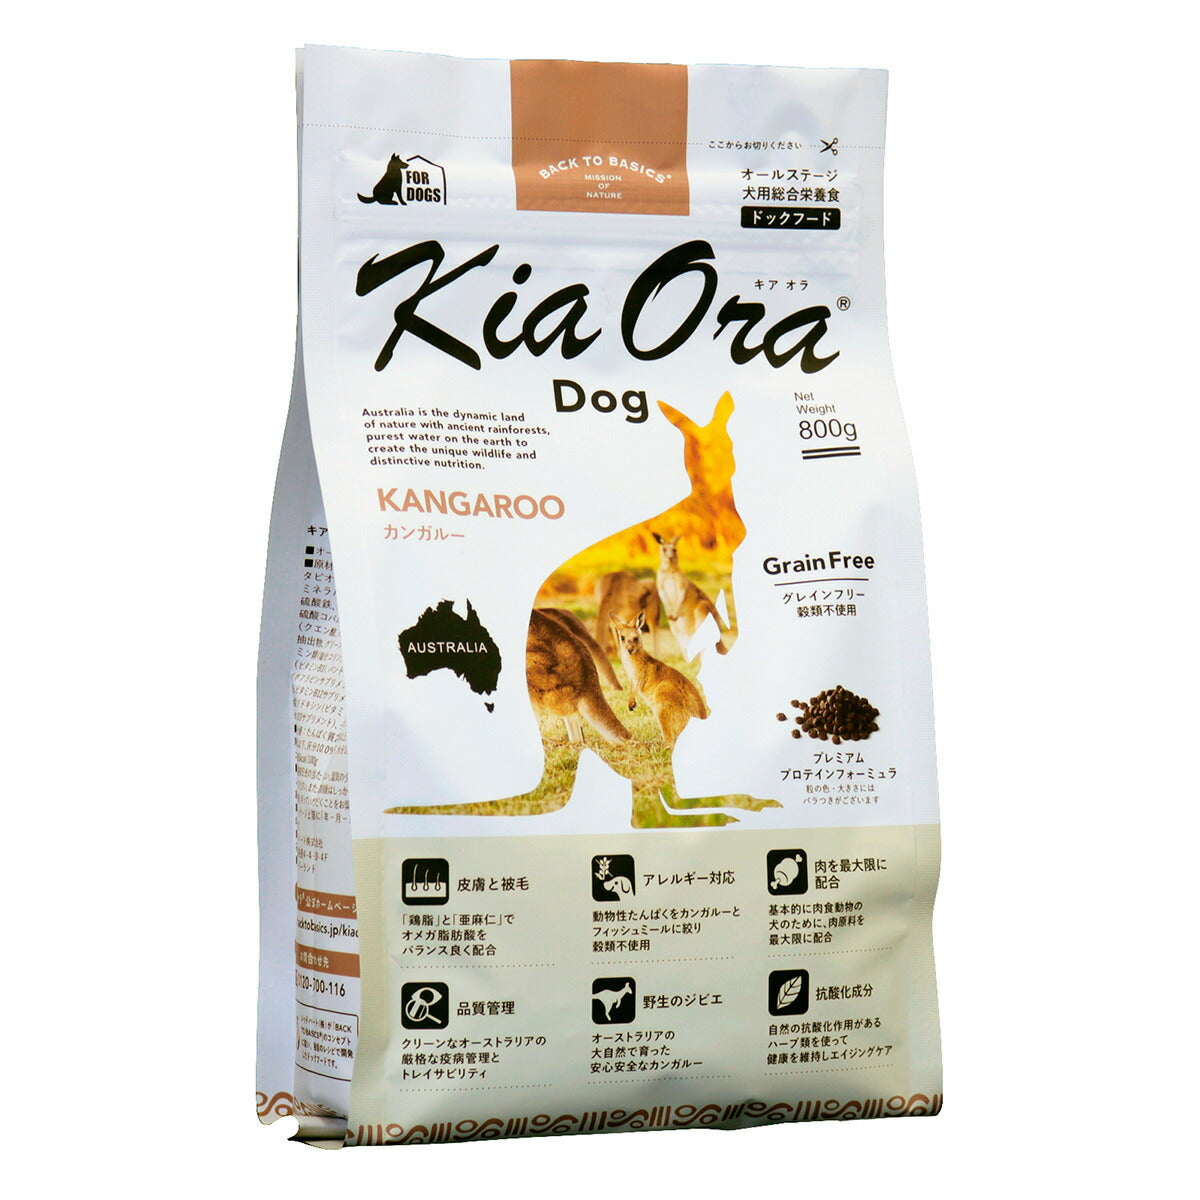 キアオラ KiaOra ドッグフード カンガルー 800g 犬 ドライフード 総合栄養食 無添加 グレインフリー 全年齢用 オールブリード